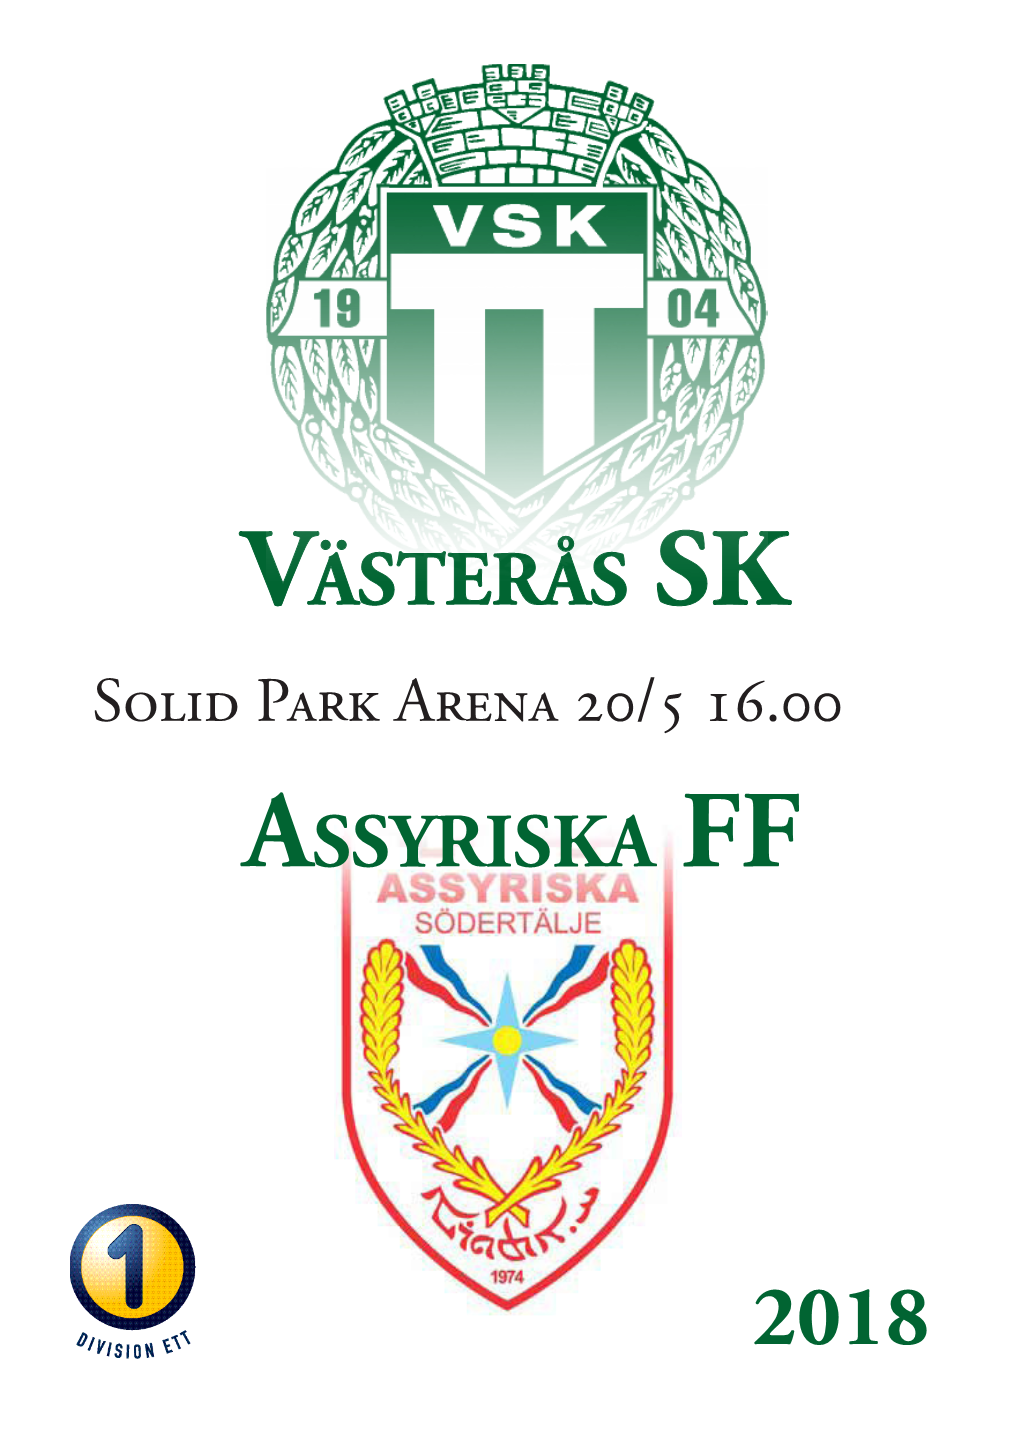 Västerås Sk Assyriska FF